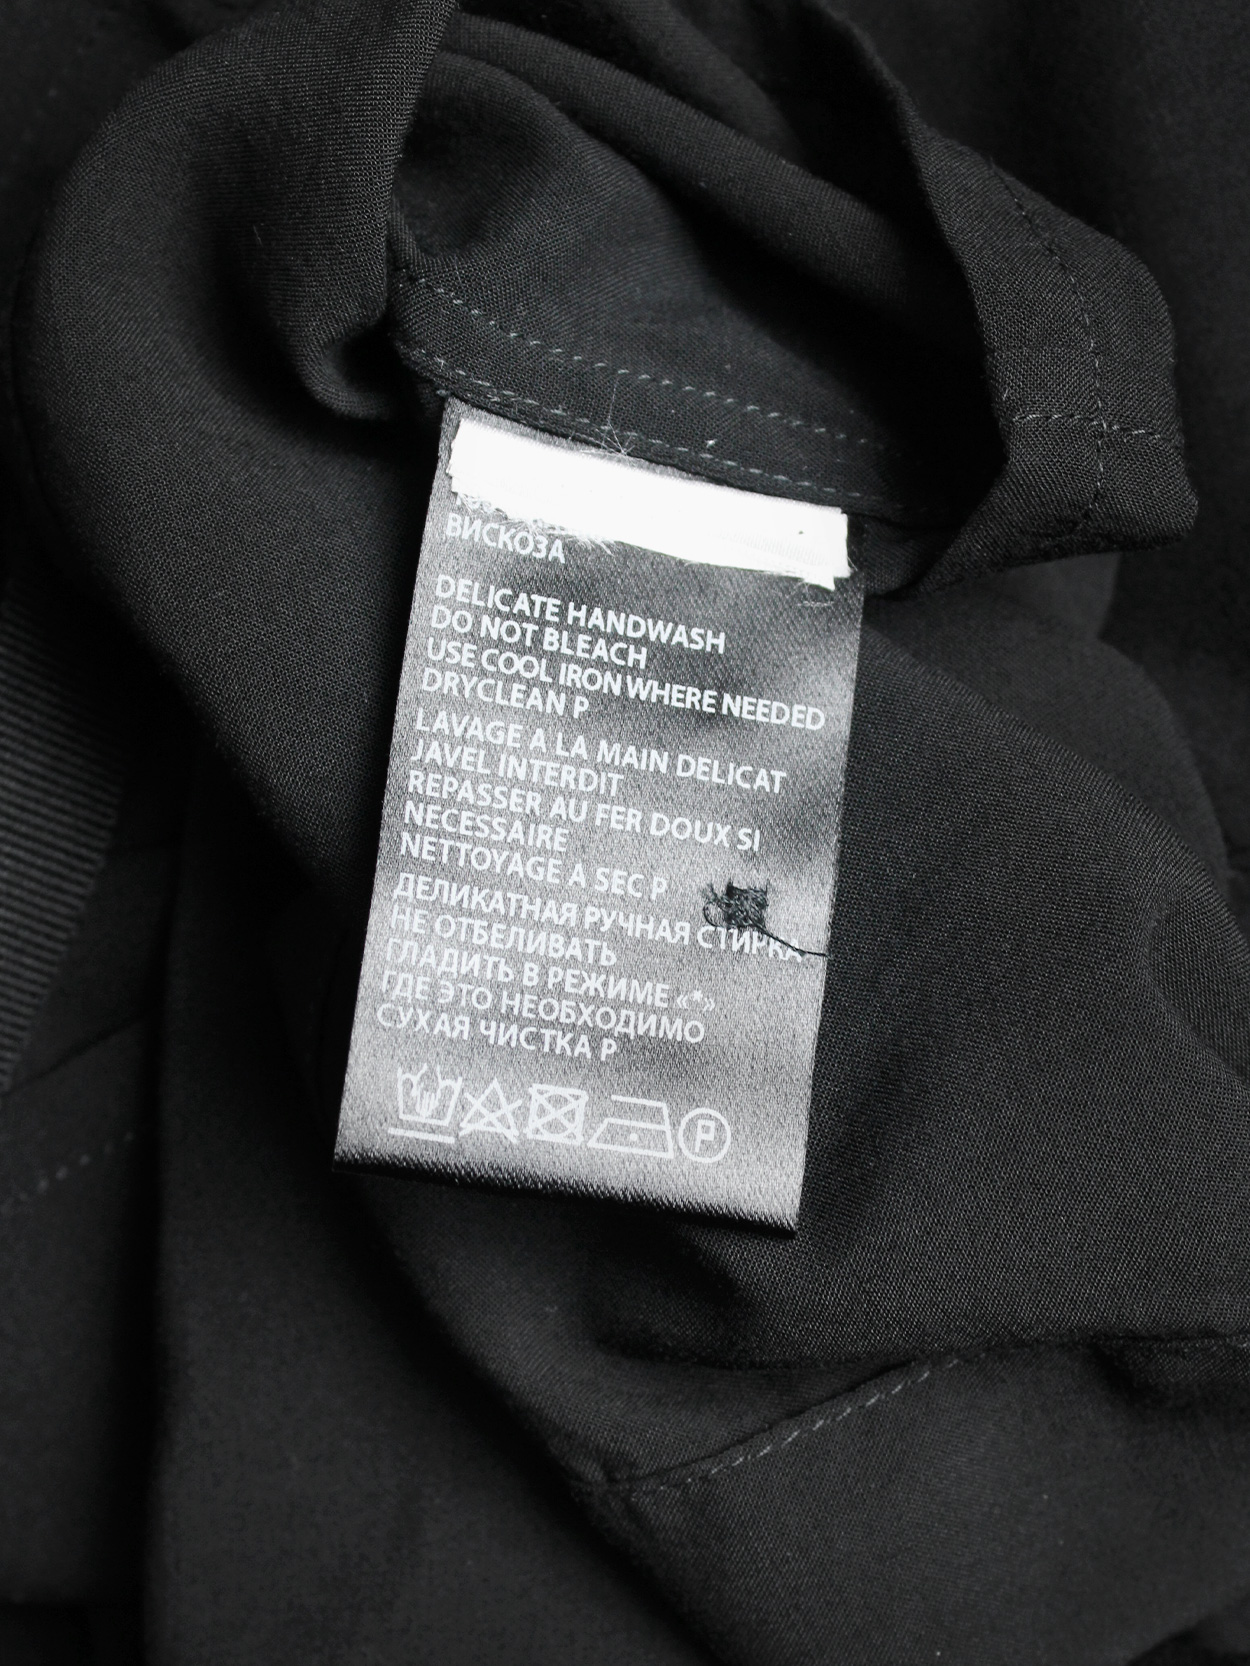 Ann Demeulemeester black batwing shirt with tassel belt — fall 2013 - V ...